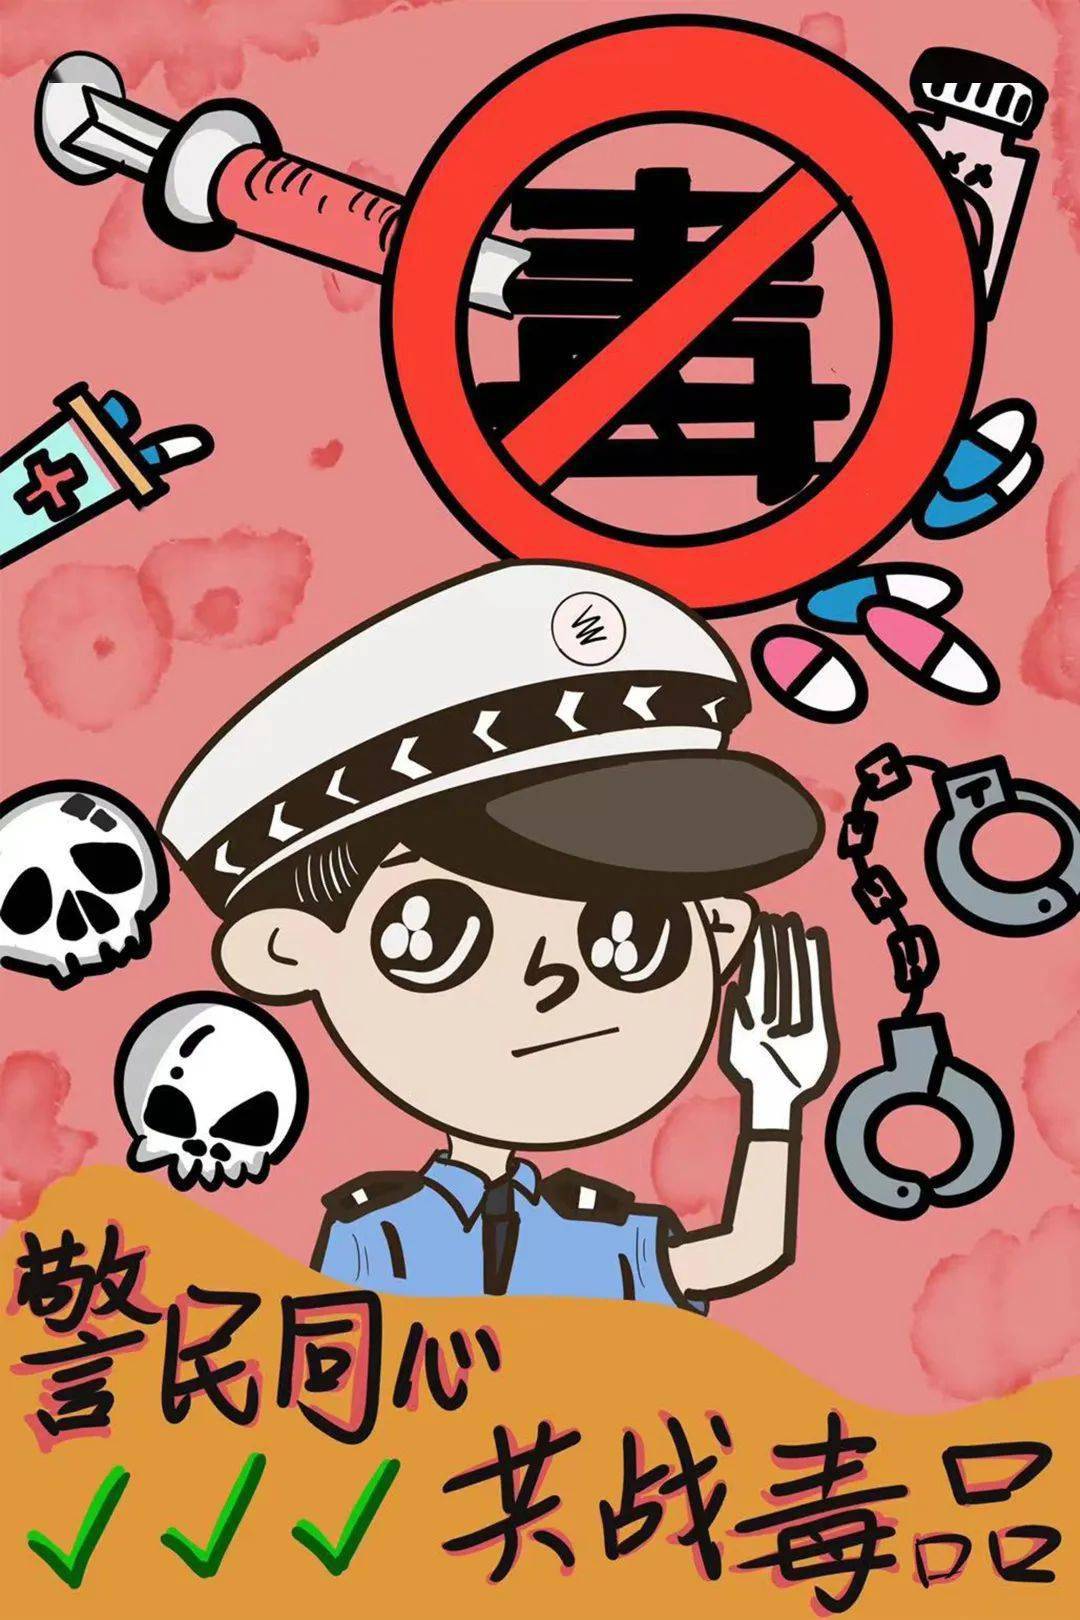 84 厦门工艺美术学院赵越我画的是一幅反对毒品的宣传画,禁毒需要警察